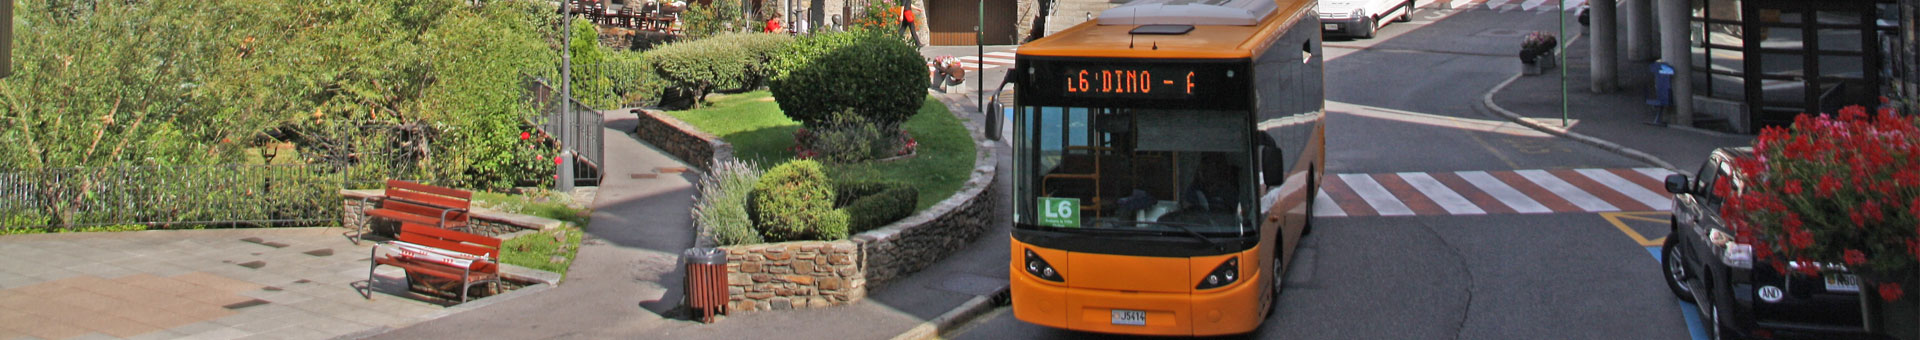 L6 Andorra la Vella – Ordino